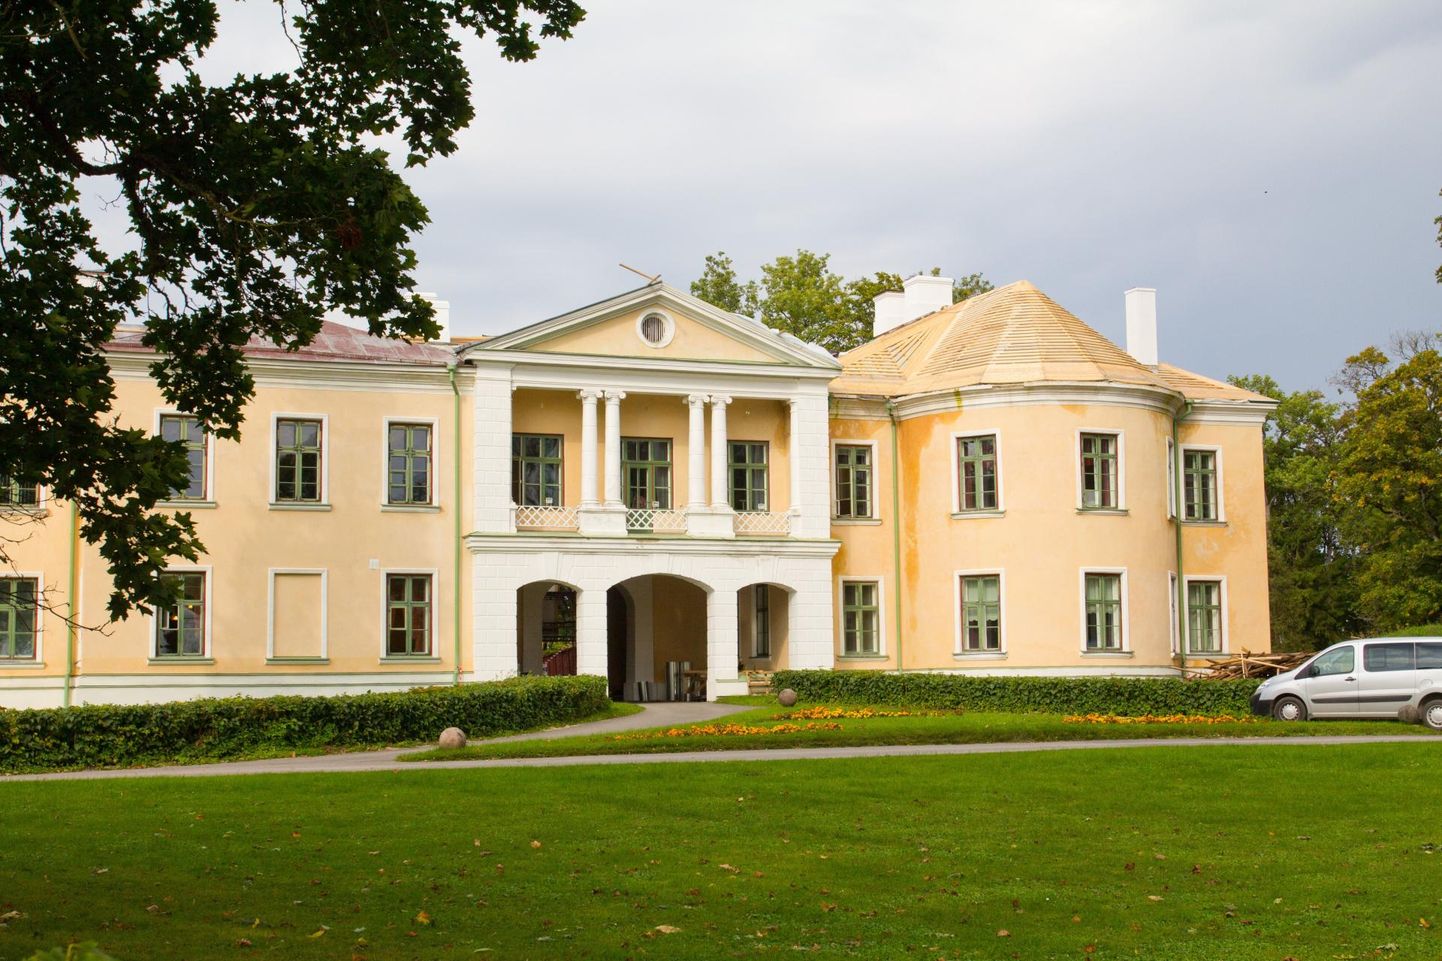 Mõdriku kool muutub septembrist Tallinna tehnikakõrgkooli teenusmajanduse instituudiks. Sel aastal katsetati uut eriala, mis kohe noorte seas populaarseks osutus.